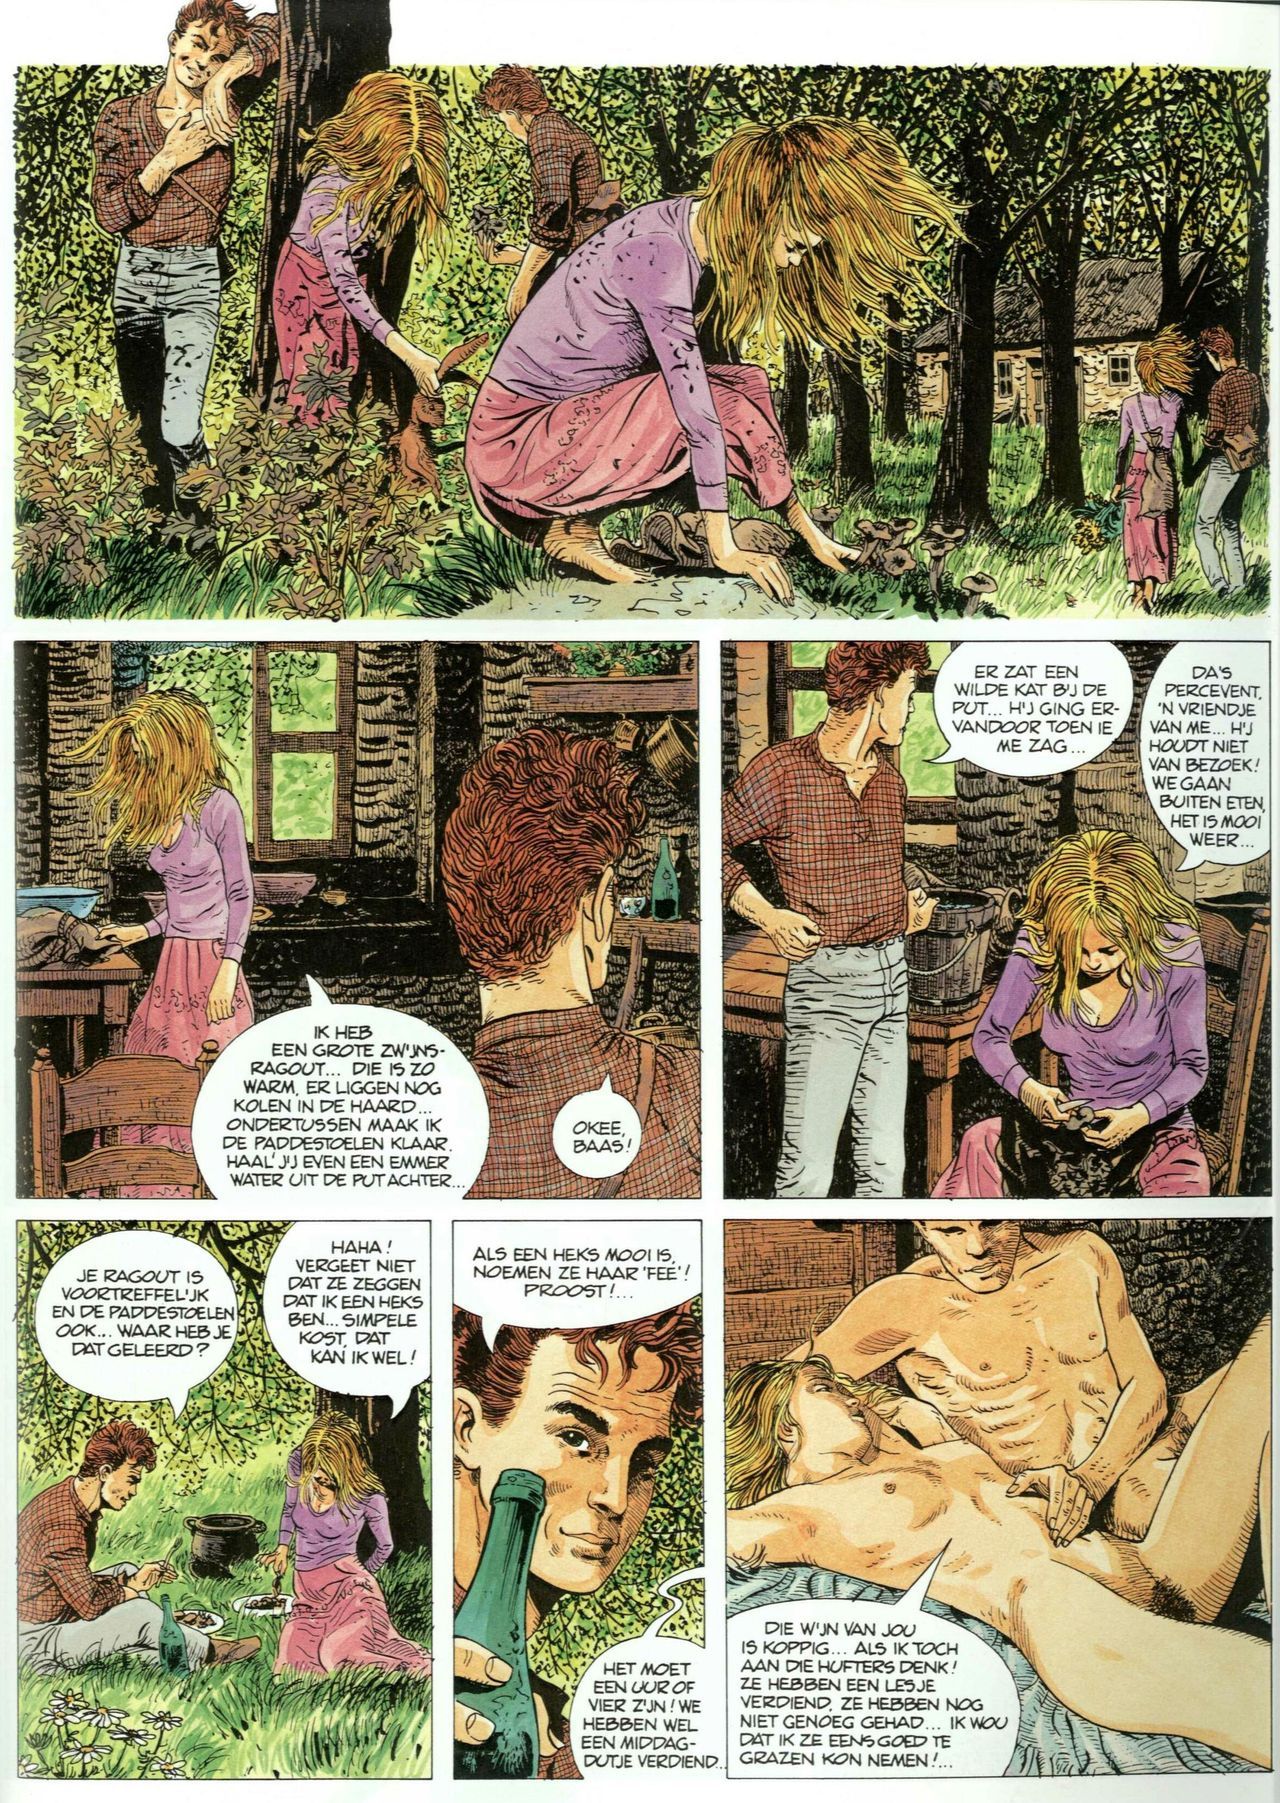 Bosliefje - 01 - Julien (Dutch) Franstalige strips die op deze site staan, hier is de Nederlandse uitgave! 32